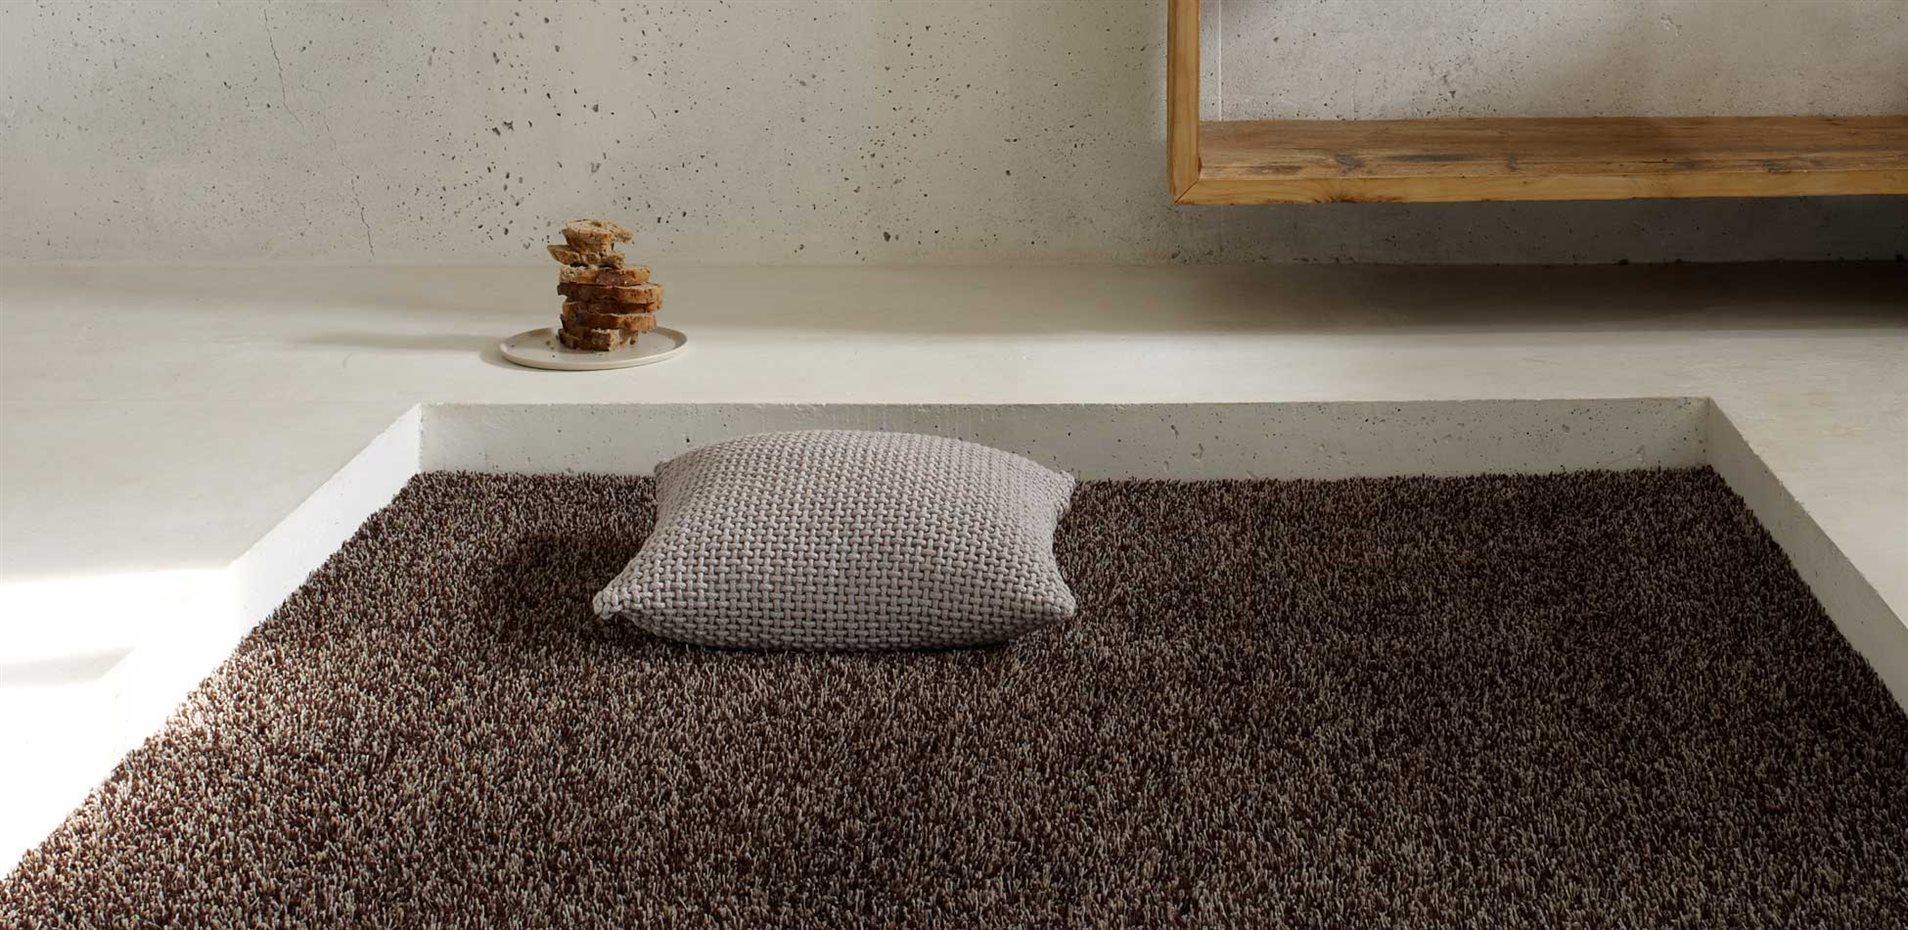 FLASH 1430 by Object carpet. Las moquetas a medida en rincones acotados pueden generar una nueva visión del espacio. Modelo Flash 1430, de Object Carpet